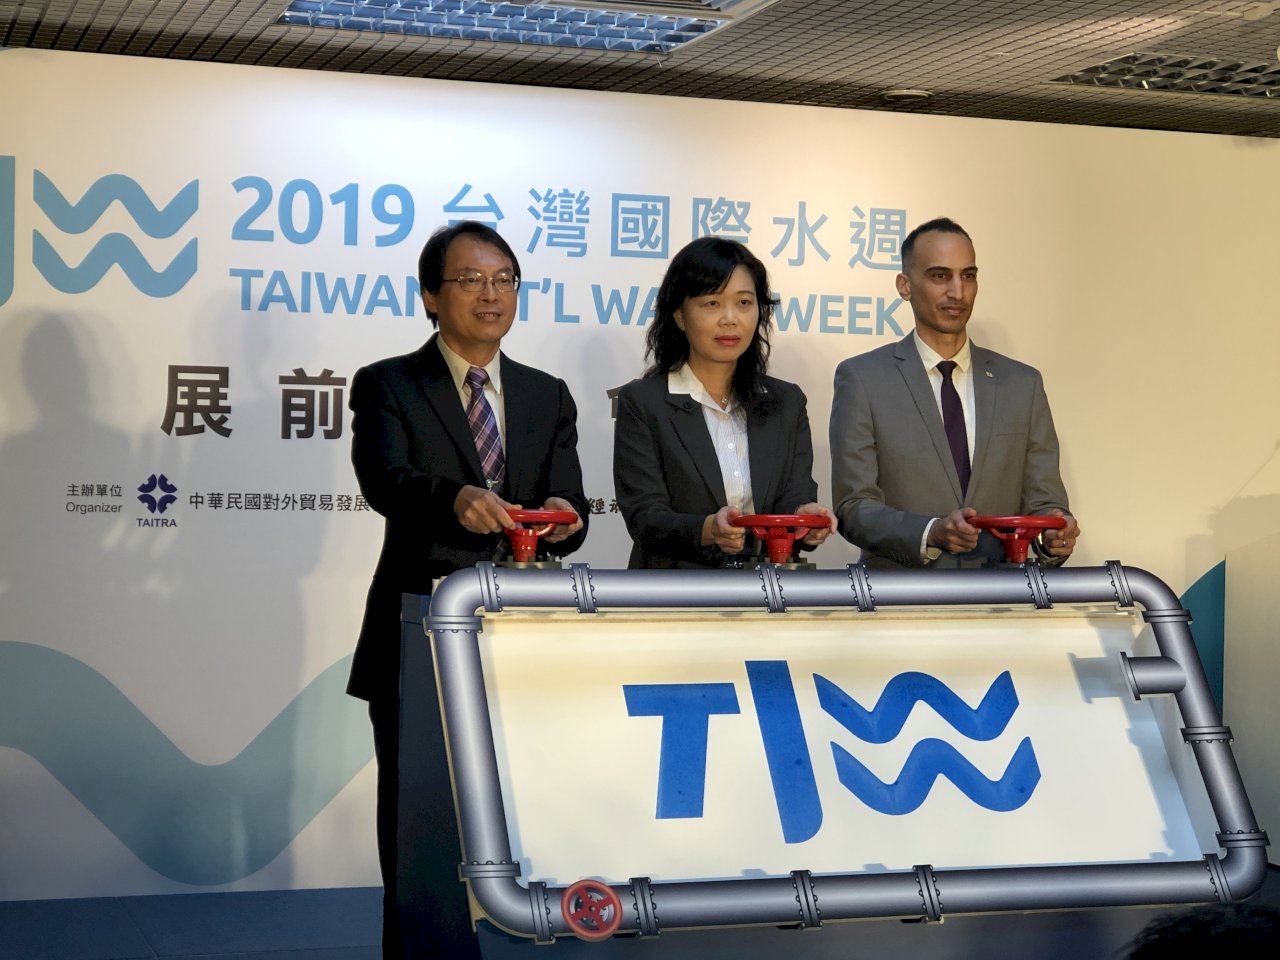 首屆台灣國際水週26日登場 展現台灣「水」實力